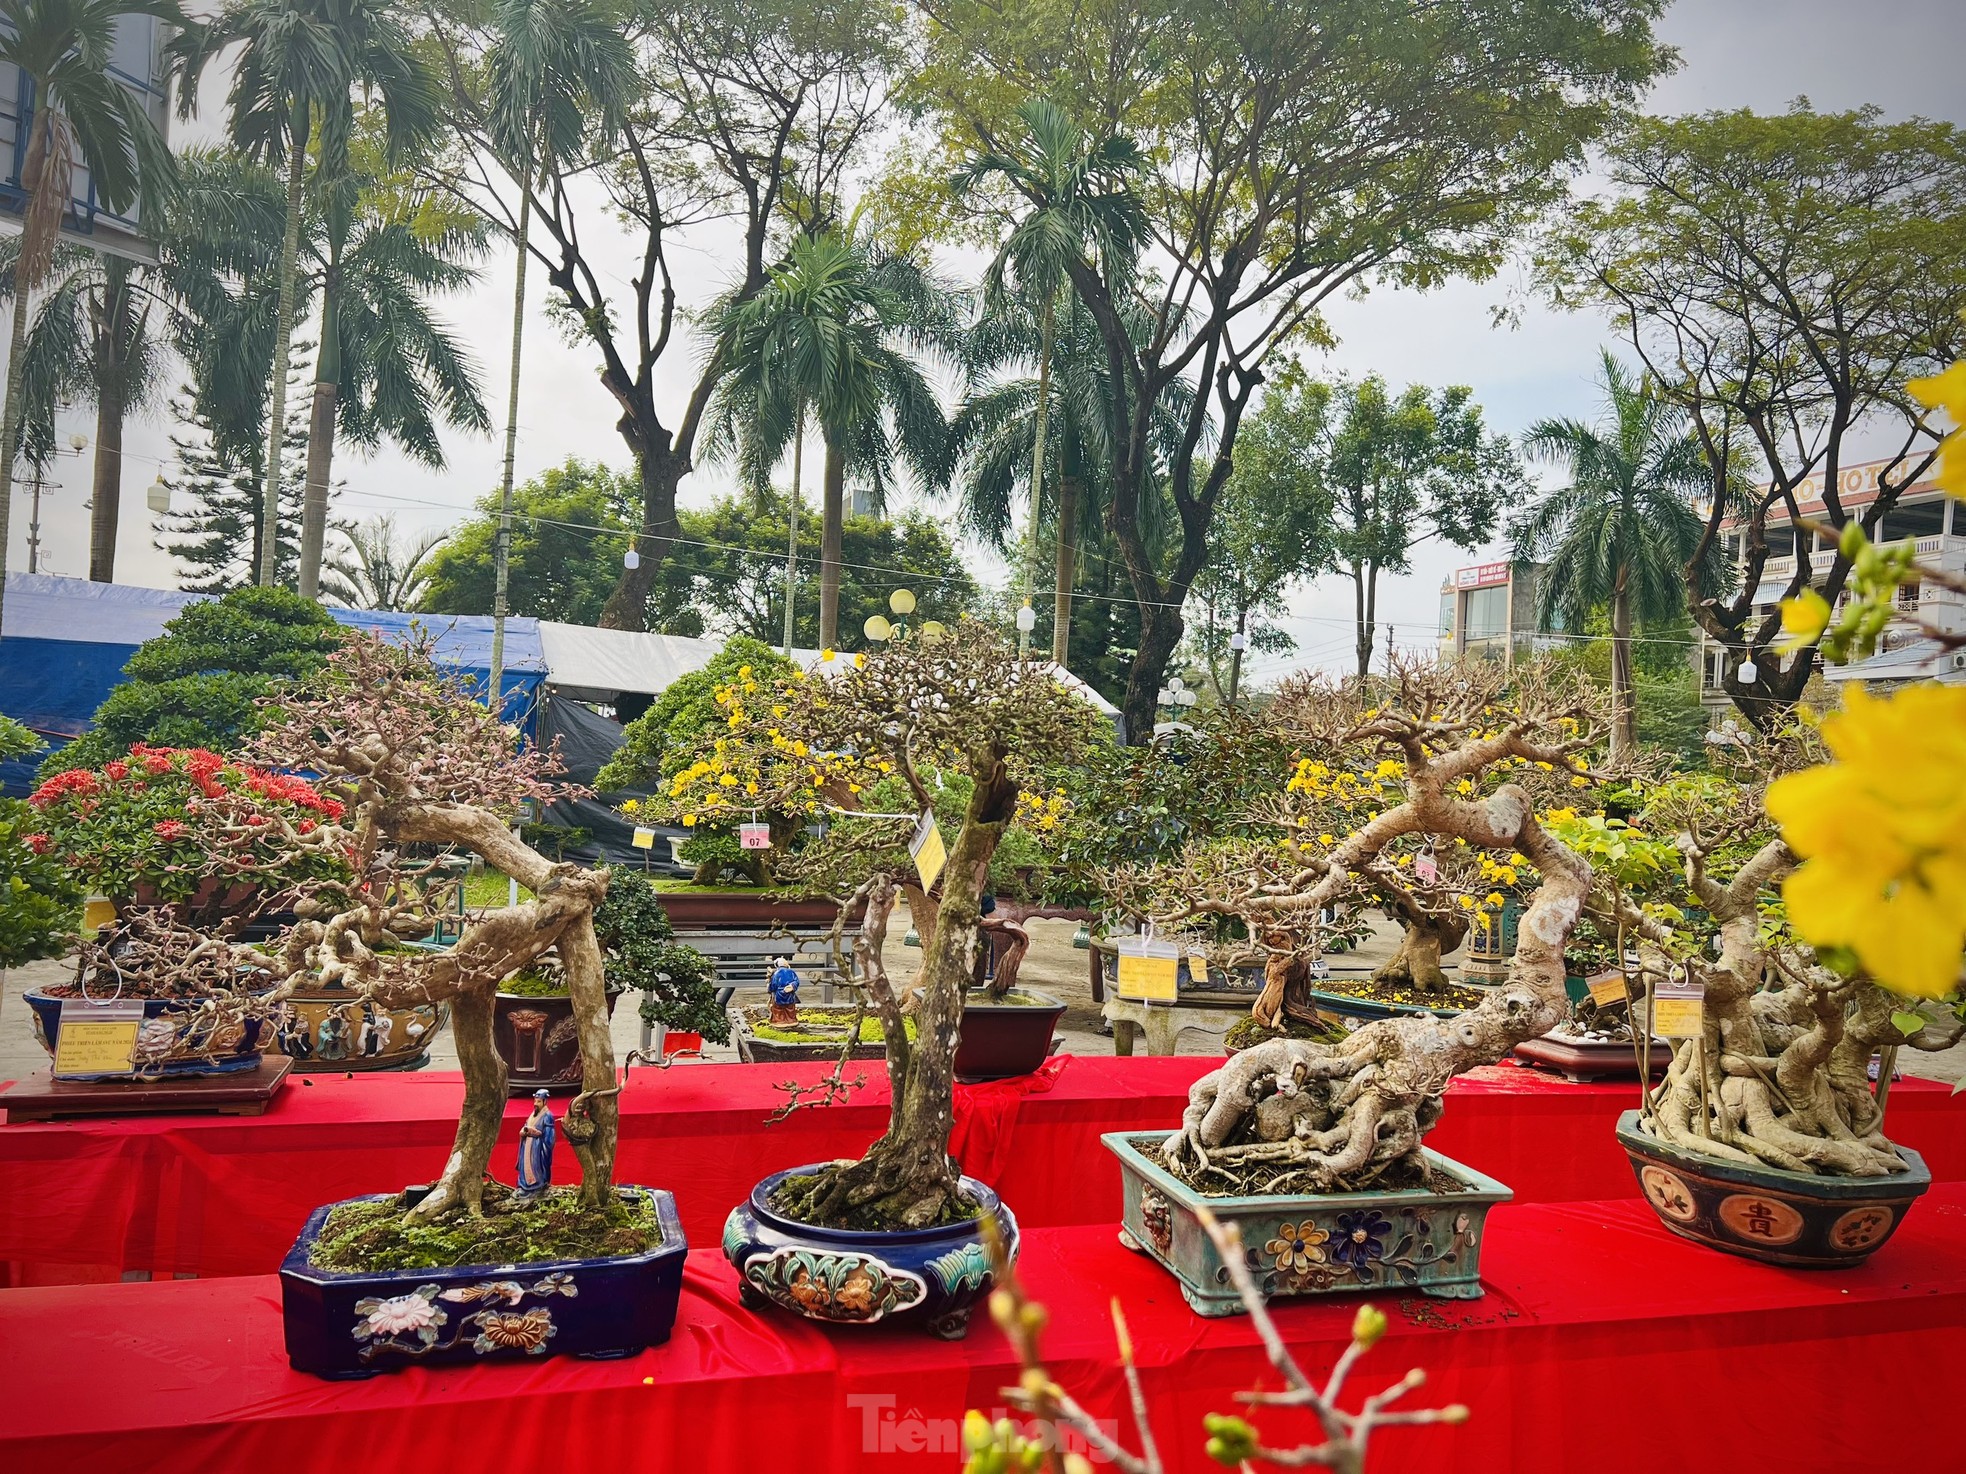 Dàn bonsai độc lạ, giá lên đến 500 triệu đồng ở Quảng Ngãi - Ảnh 4.